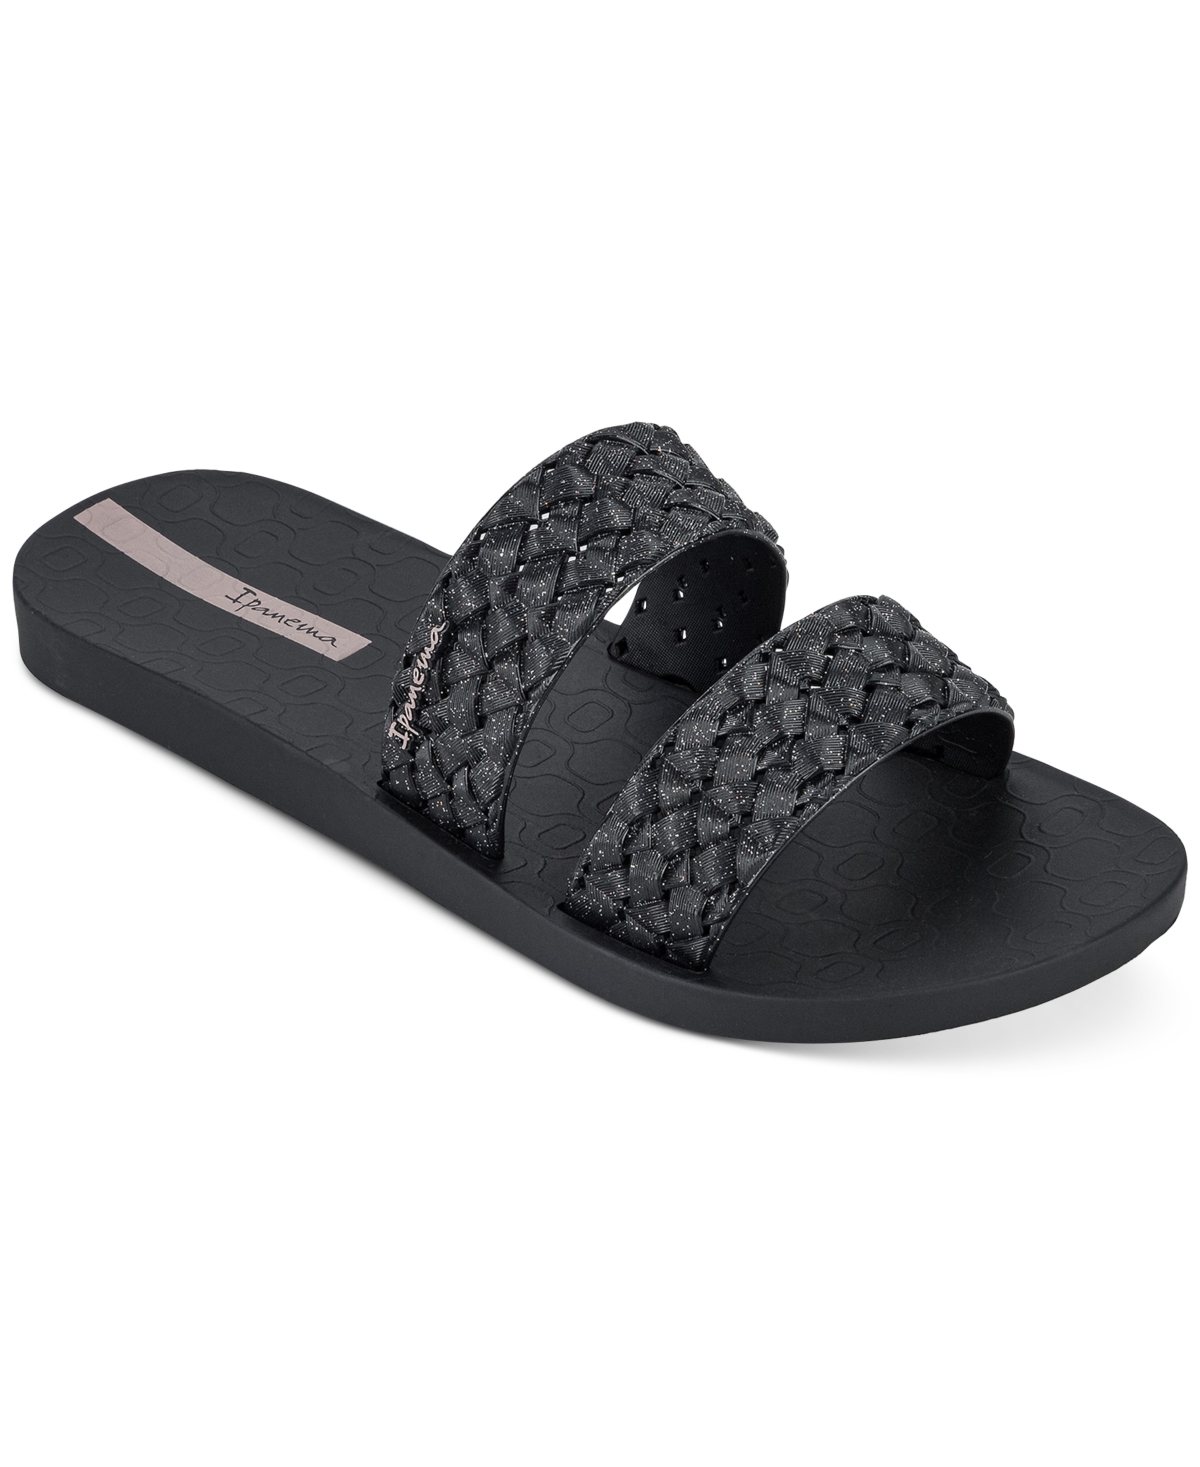 Renda Ii Fem Slide Sandals - Black Glitter